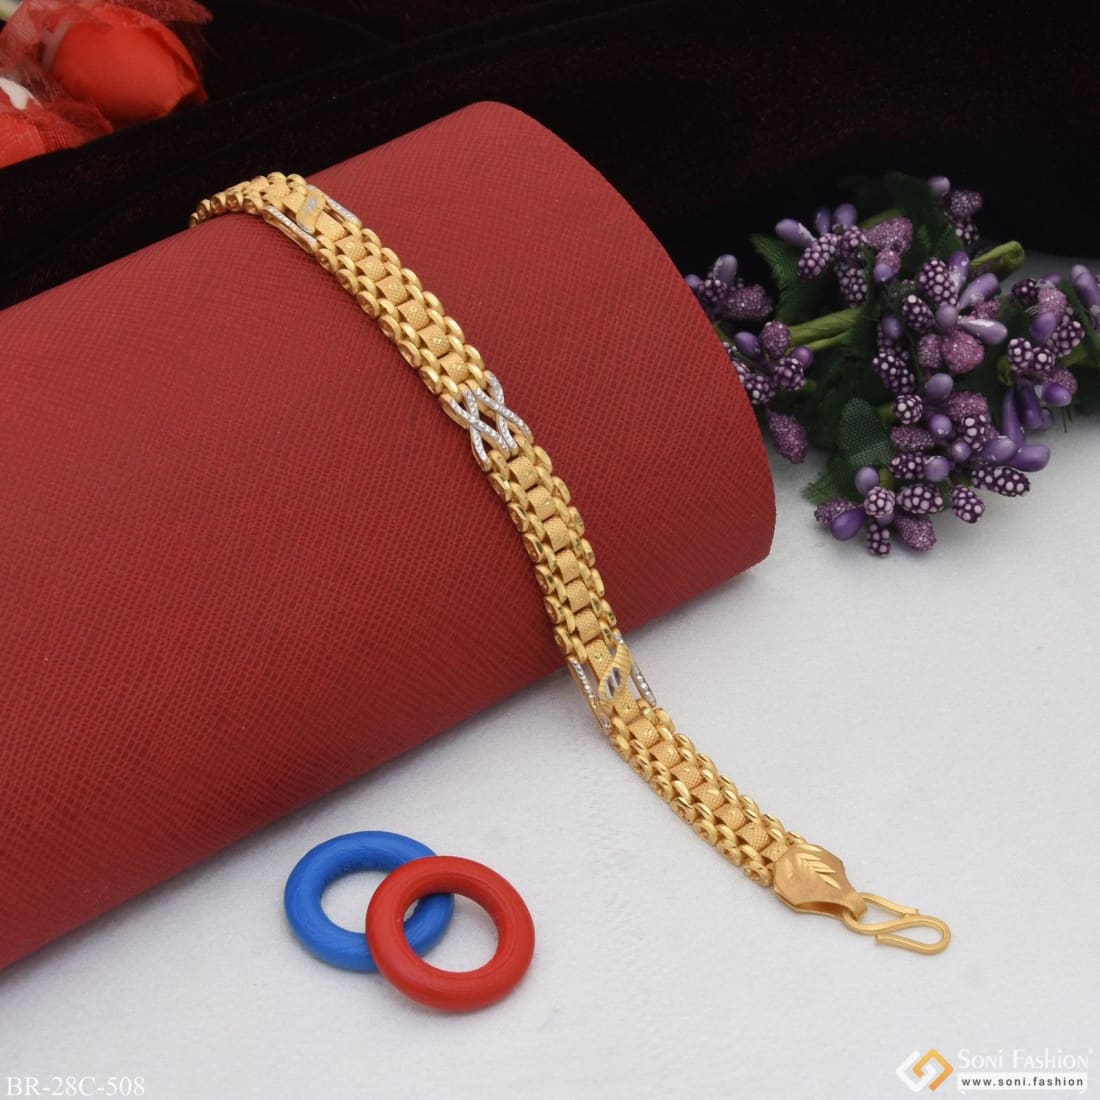 Buy GOGEMS Gold Bracelet for Women | Diamond Bangle Bracelets for Girls | 8  Gram 18 KT Rose Gold | ADBR033 at Amazon.in